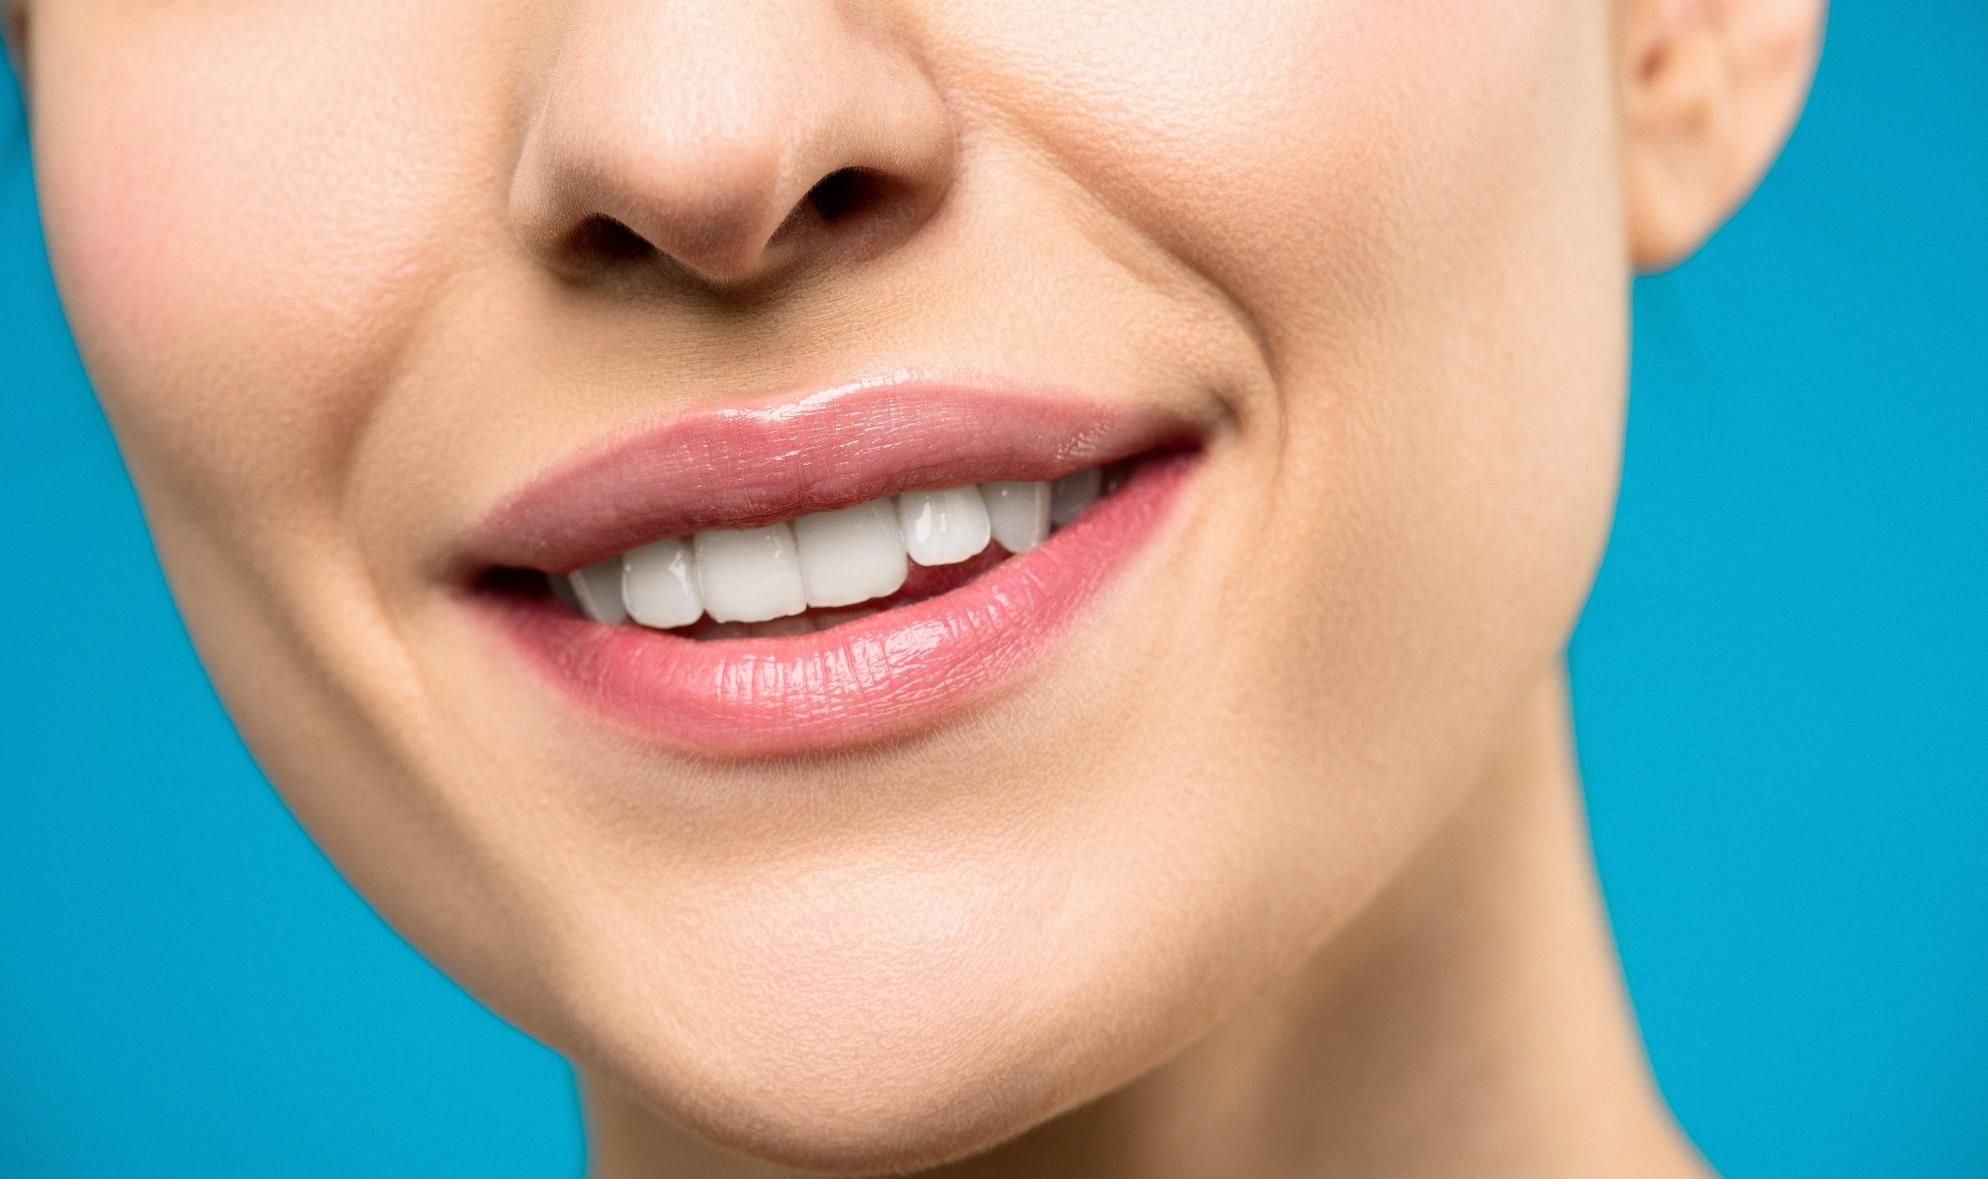 Με τον καιρό παρατηρείται μια μη φυσιολογική οδοντική φθορά με τη μορφή αποτριβής στις κοπτικές και μασητικές επιφάνειες των δοντιών.